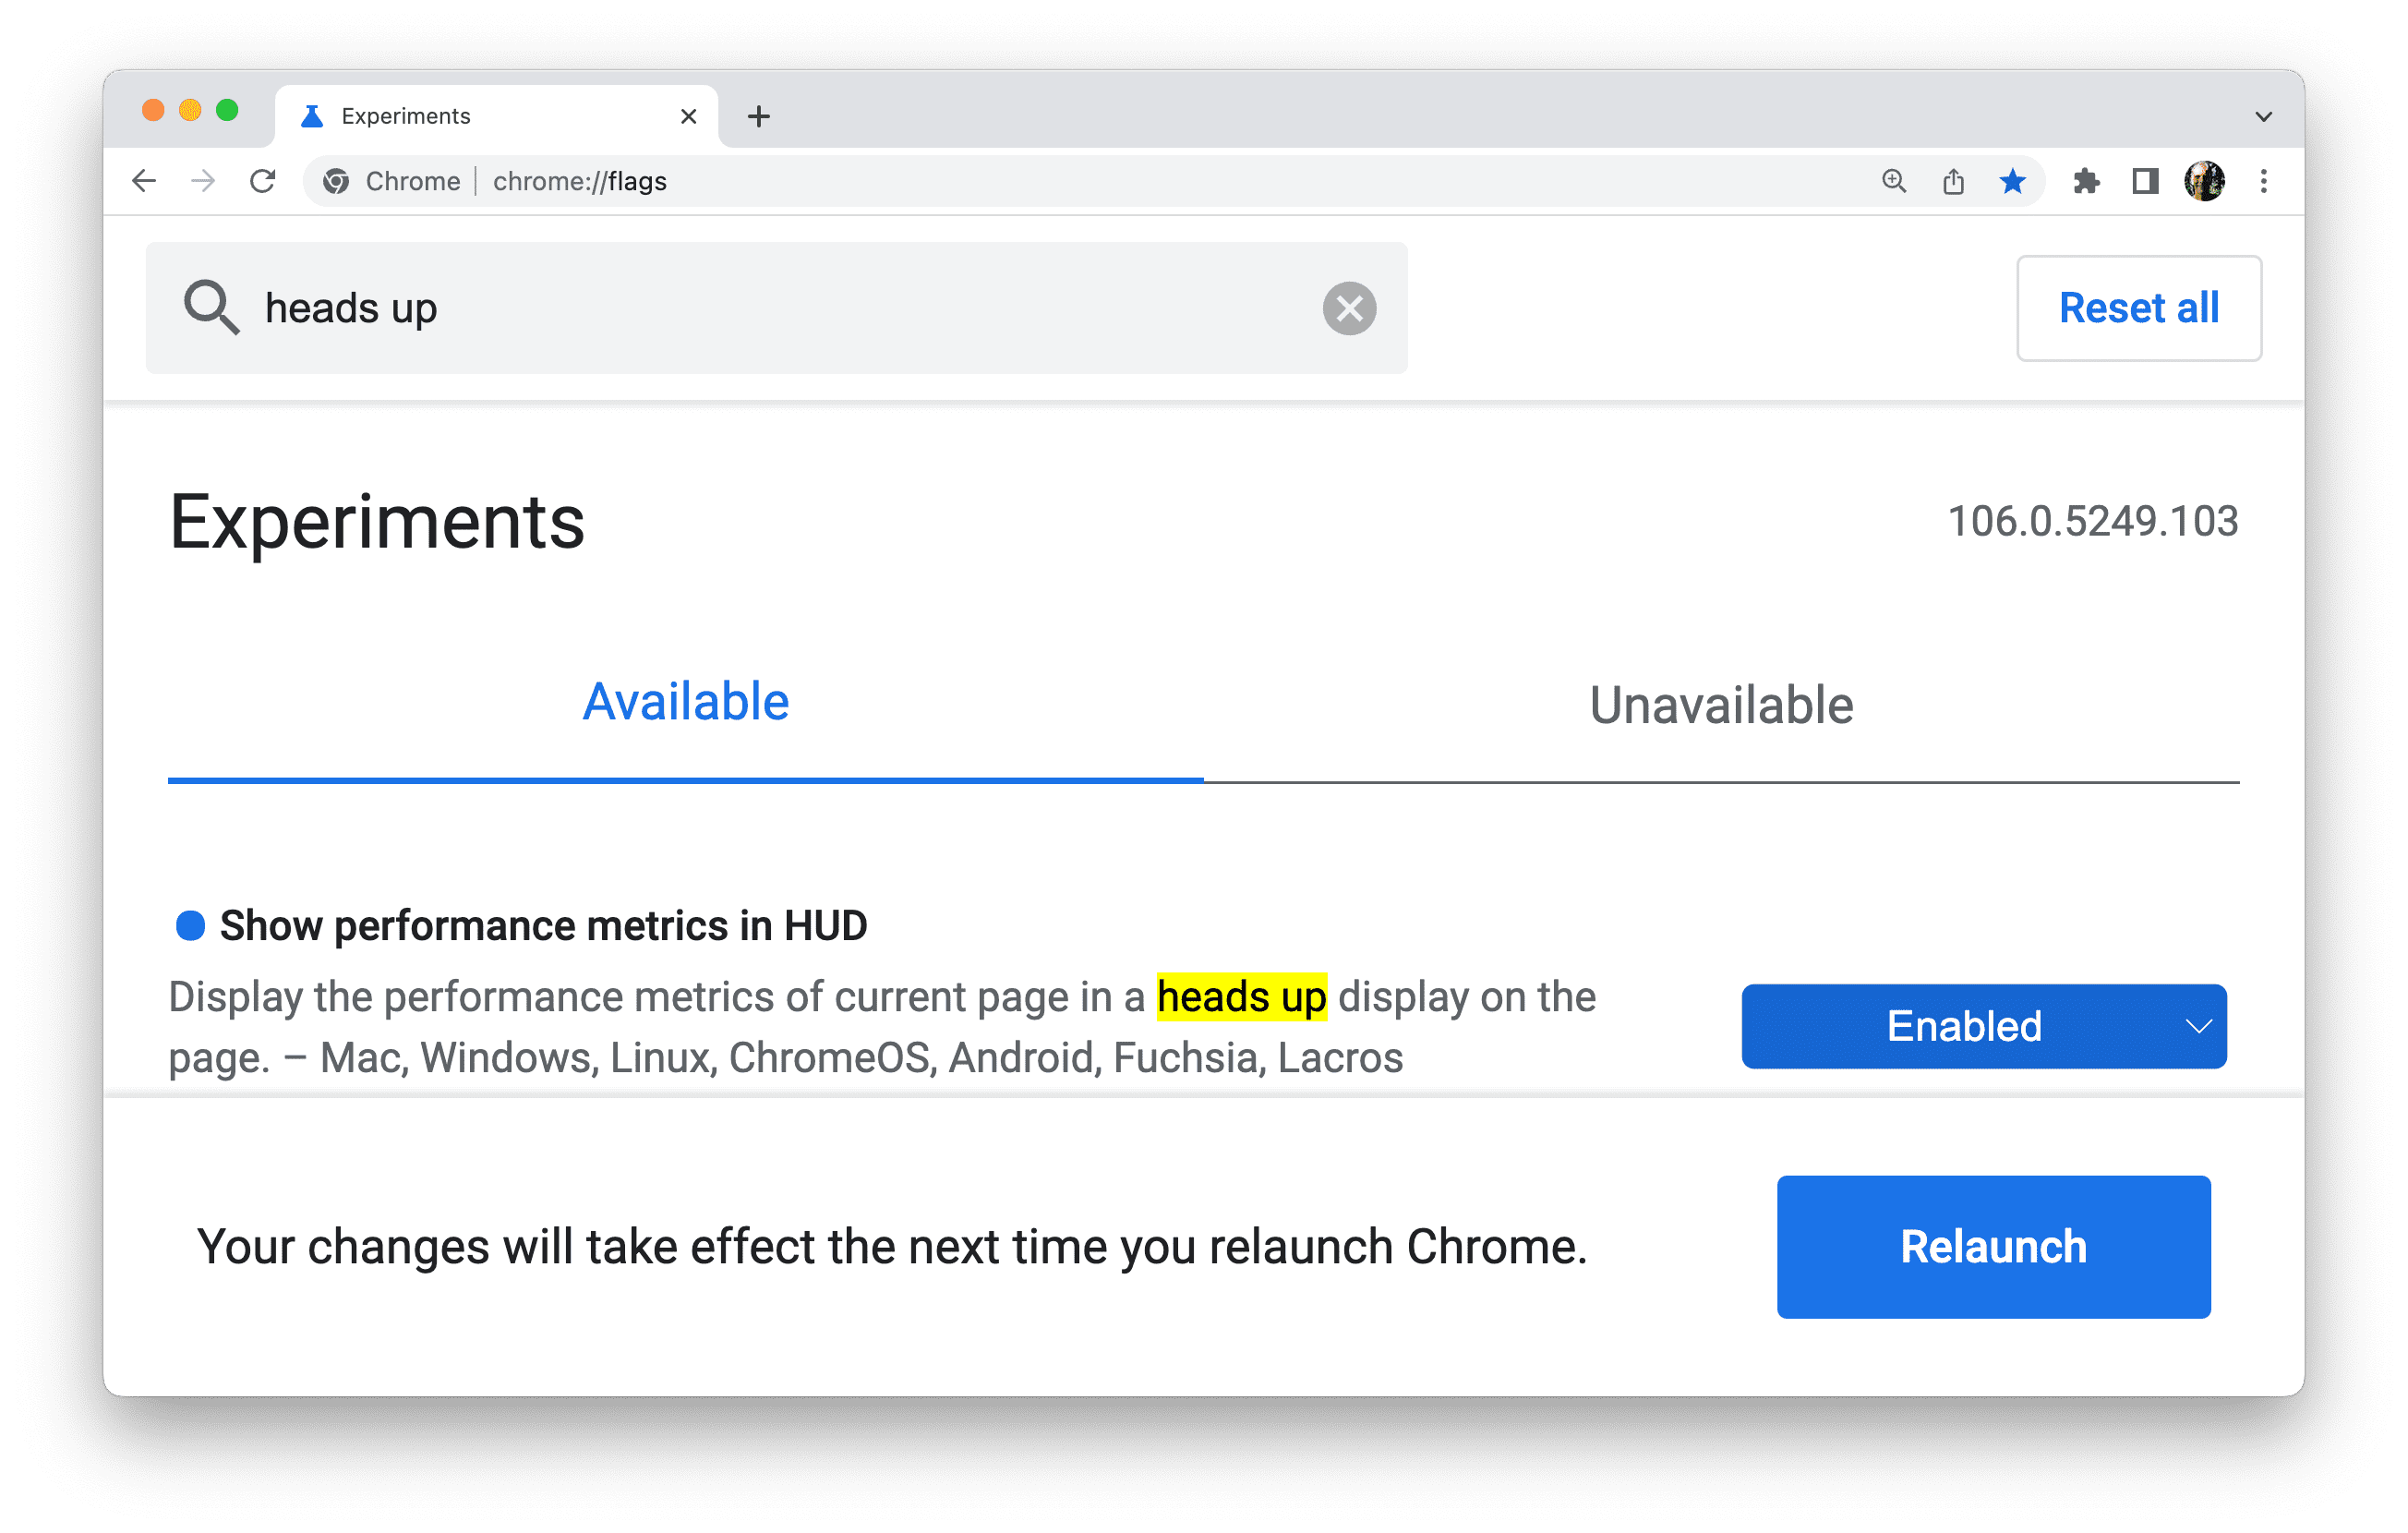 फ़्लैग अपडेट करने के बाद, Chrome आपको ब्राउज़र को फिर से लॉन्च करने के लिए कहेगा.